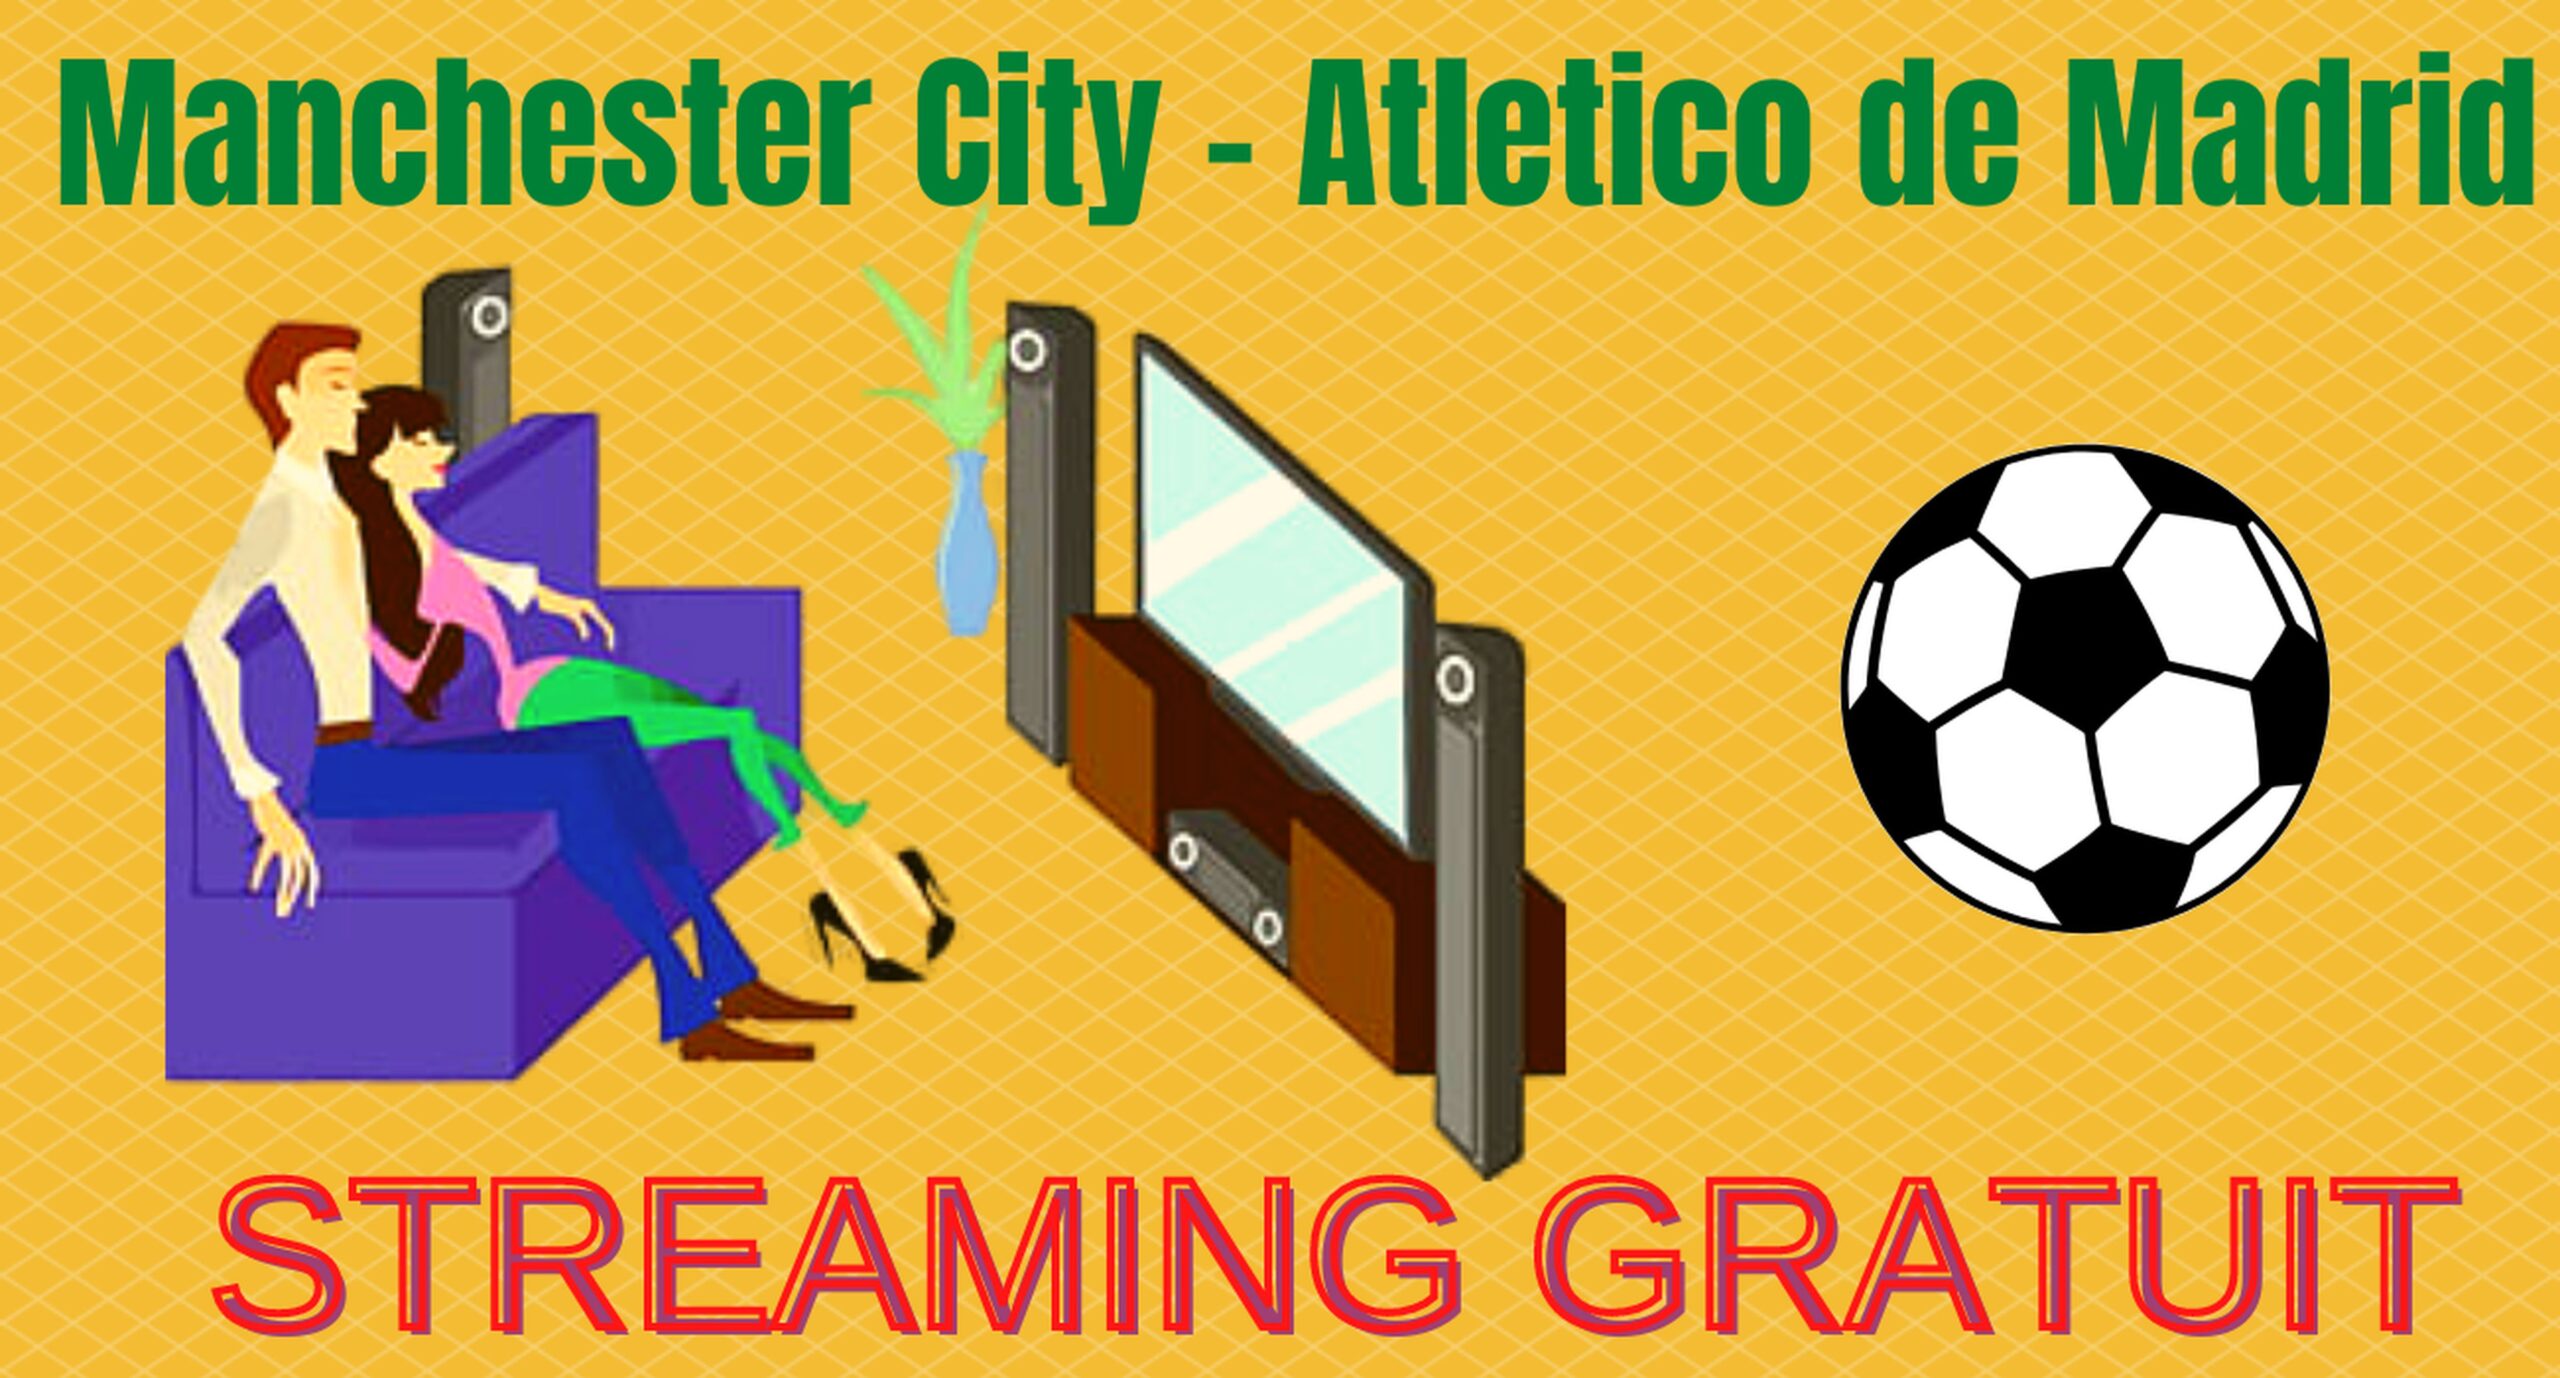 Manchester City Atletico Madrid – Streaming gratuit (chaîne étrangère)